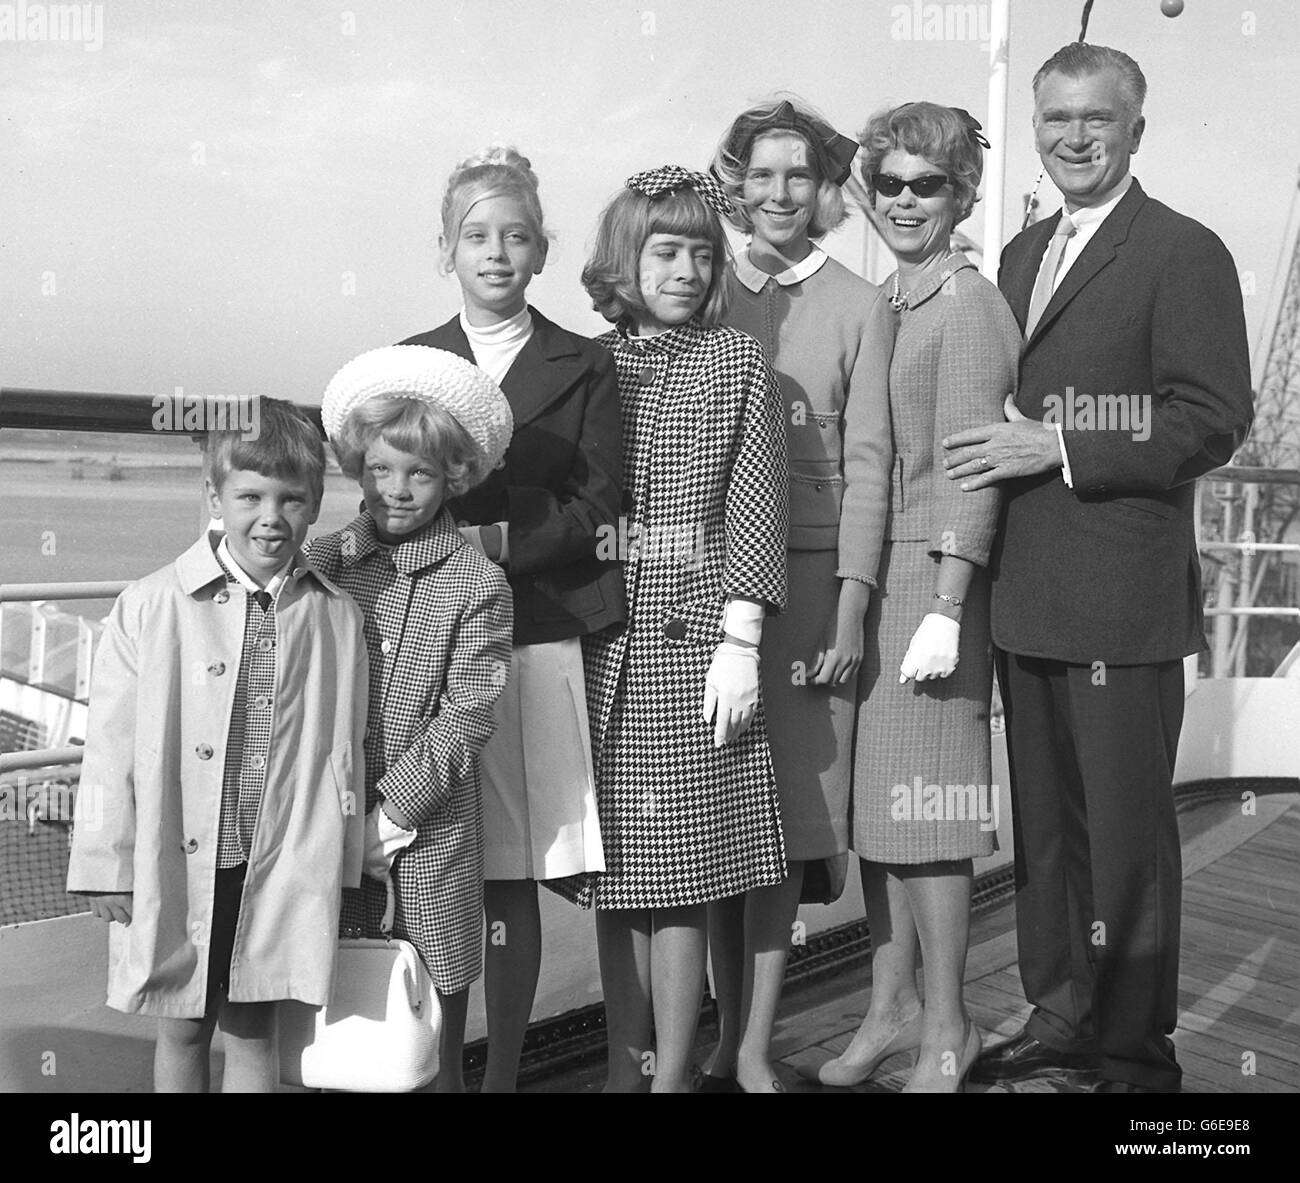 Herr Christian (Buddy) Ebsen, besser bekannt als der homespun-, Cracker-Barrel-Philosoph Jed Clampett von der ITV-Show „The Beverly Hillbillies“, mit seiner Frau Nancy und ihren fünf Kindern, bei der Ankunft in Southampton. Stockfoto